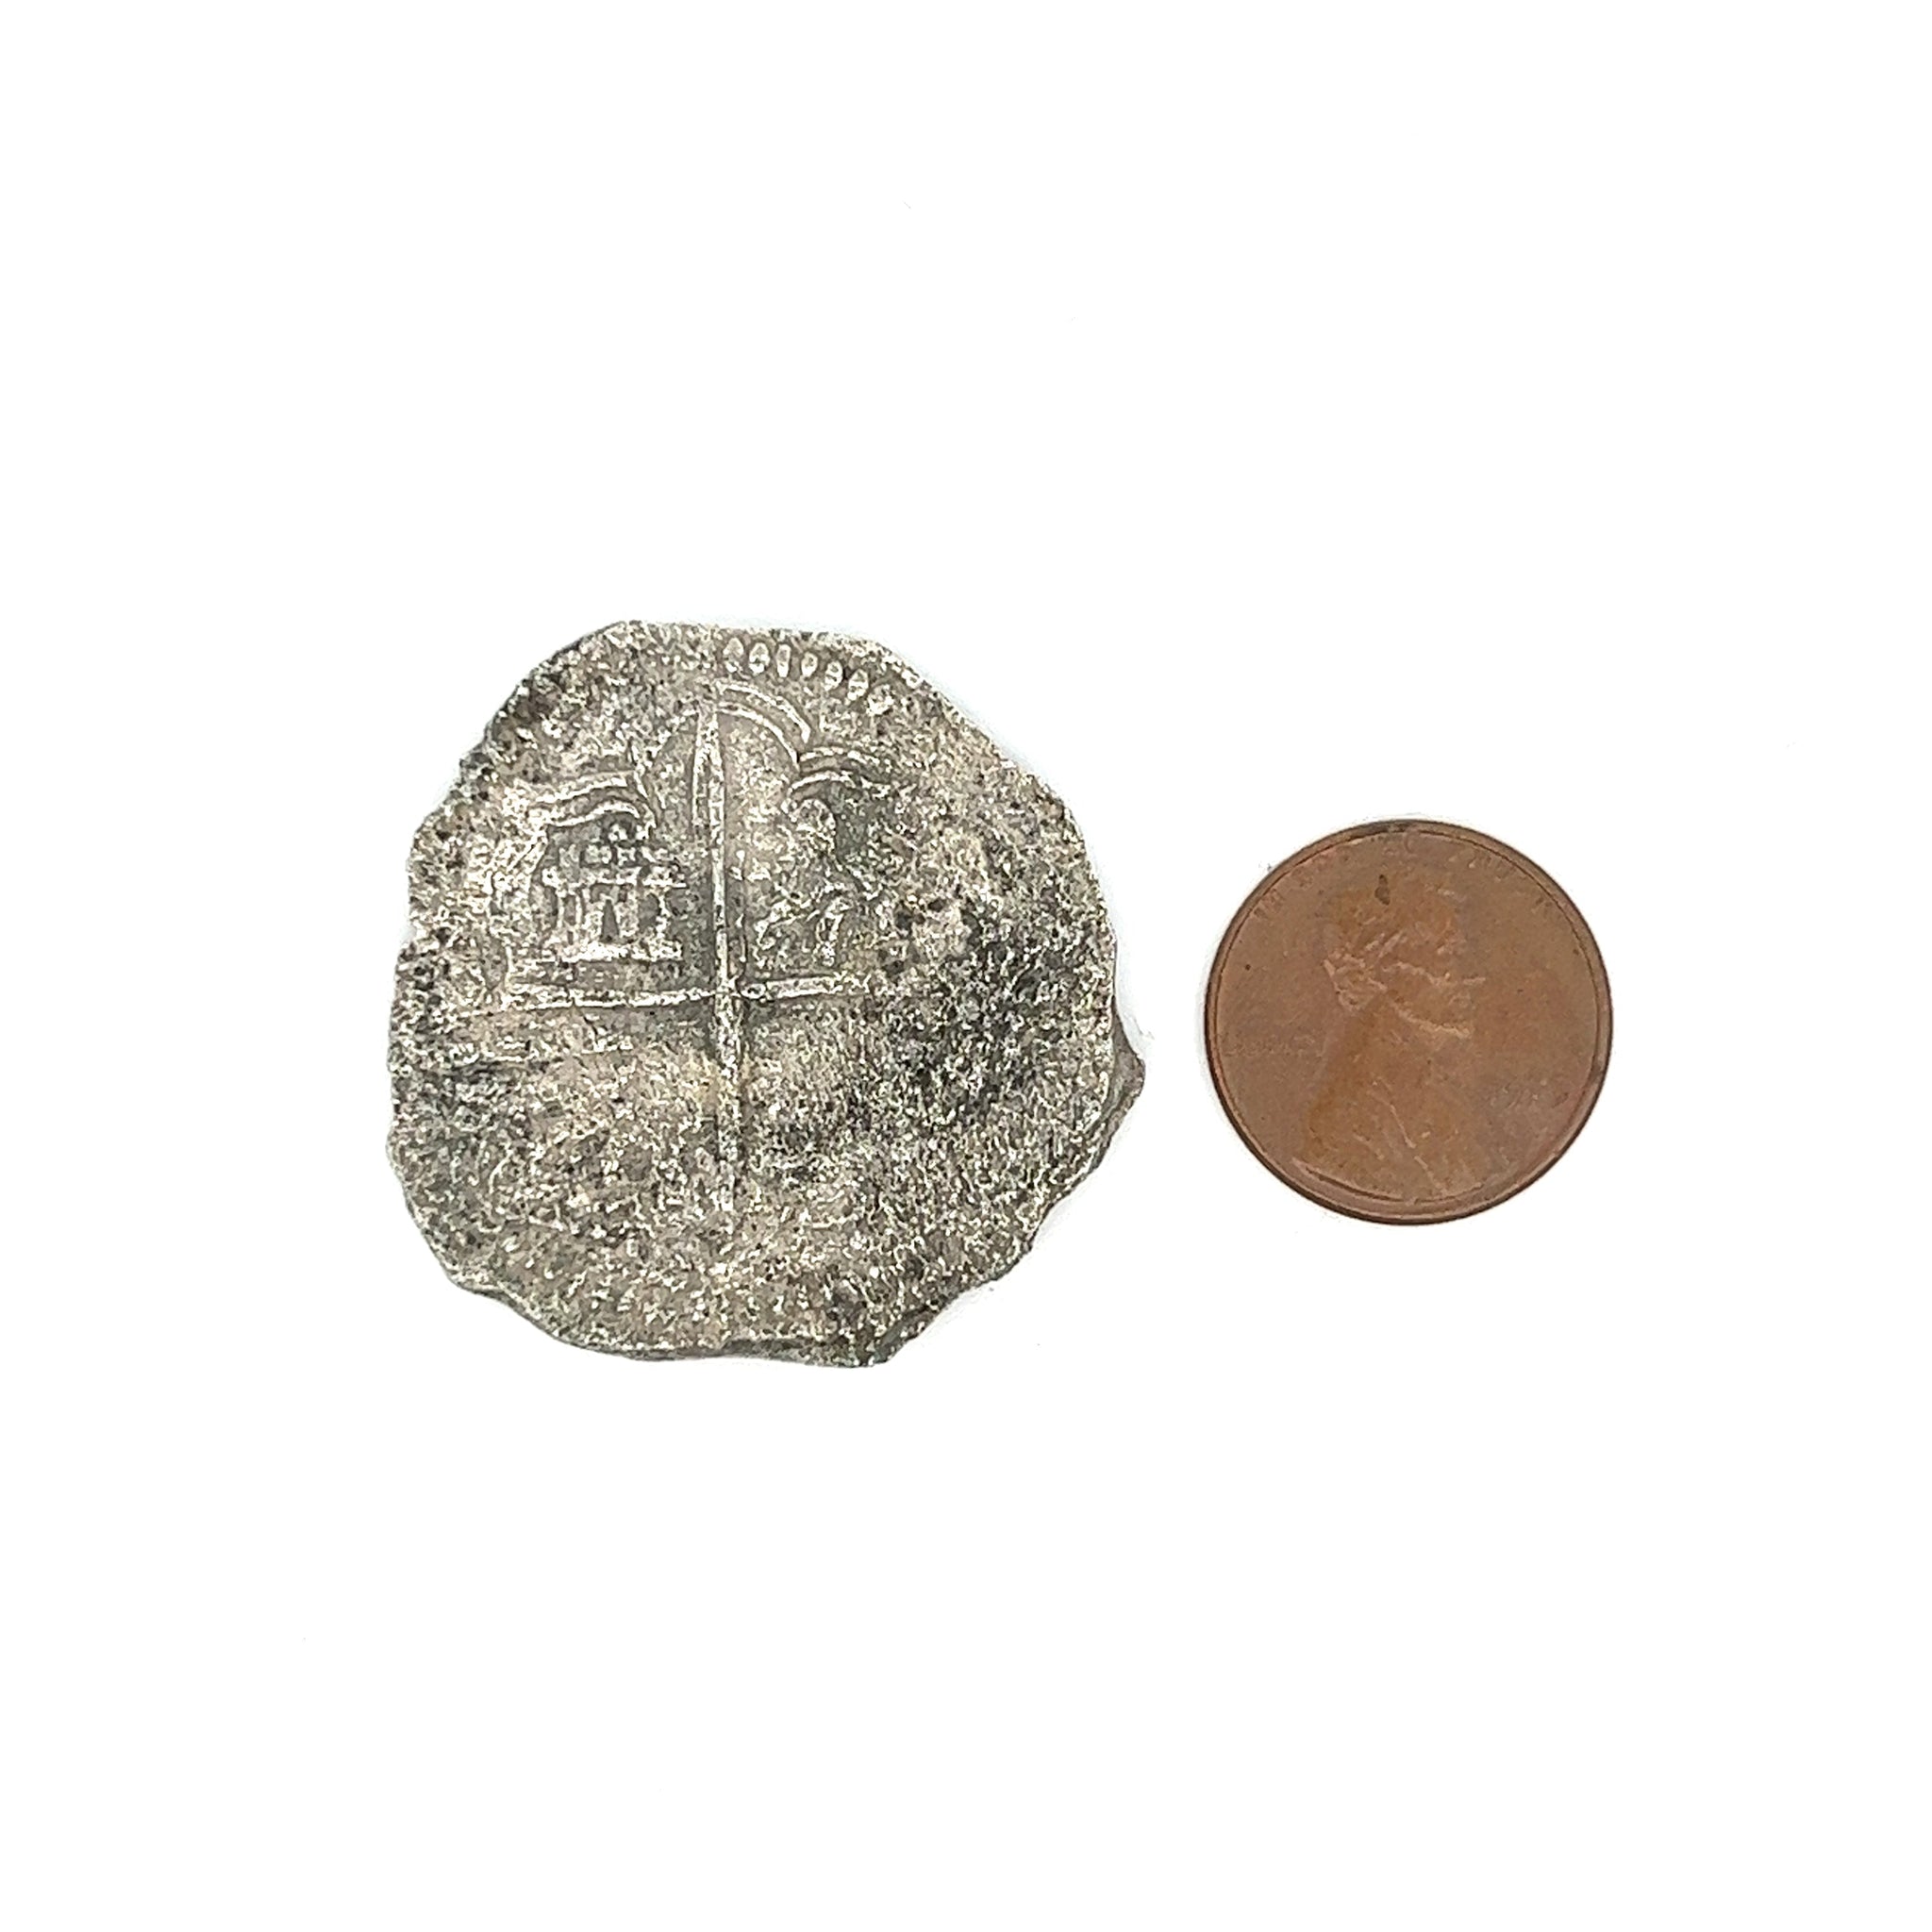 Atocha Shipwreck 8 Reale Grade 3 Potosi Mint Coin-Coins-ASSAY